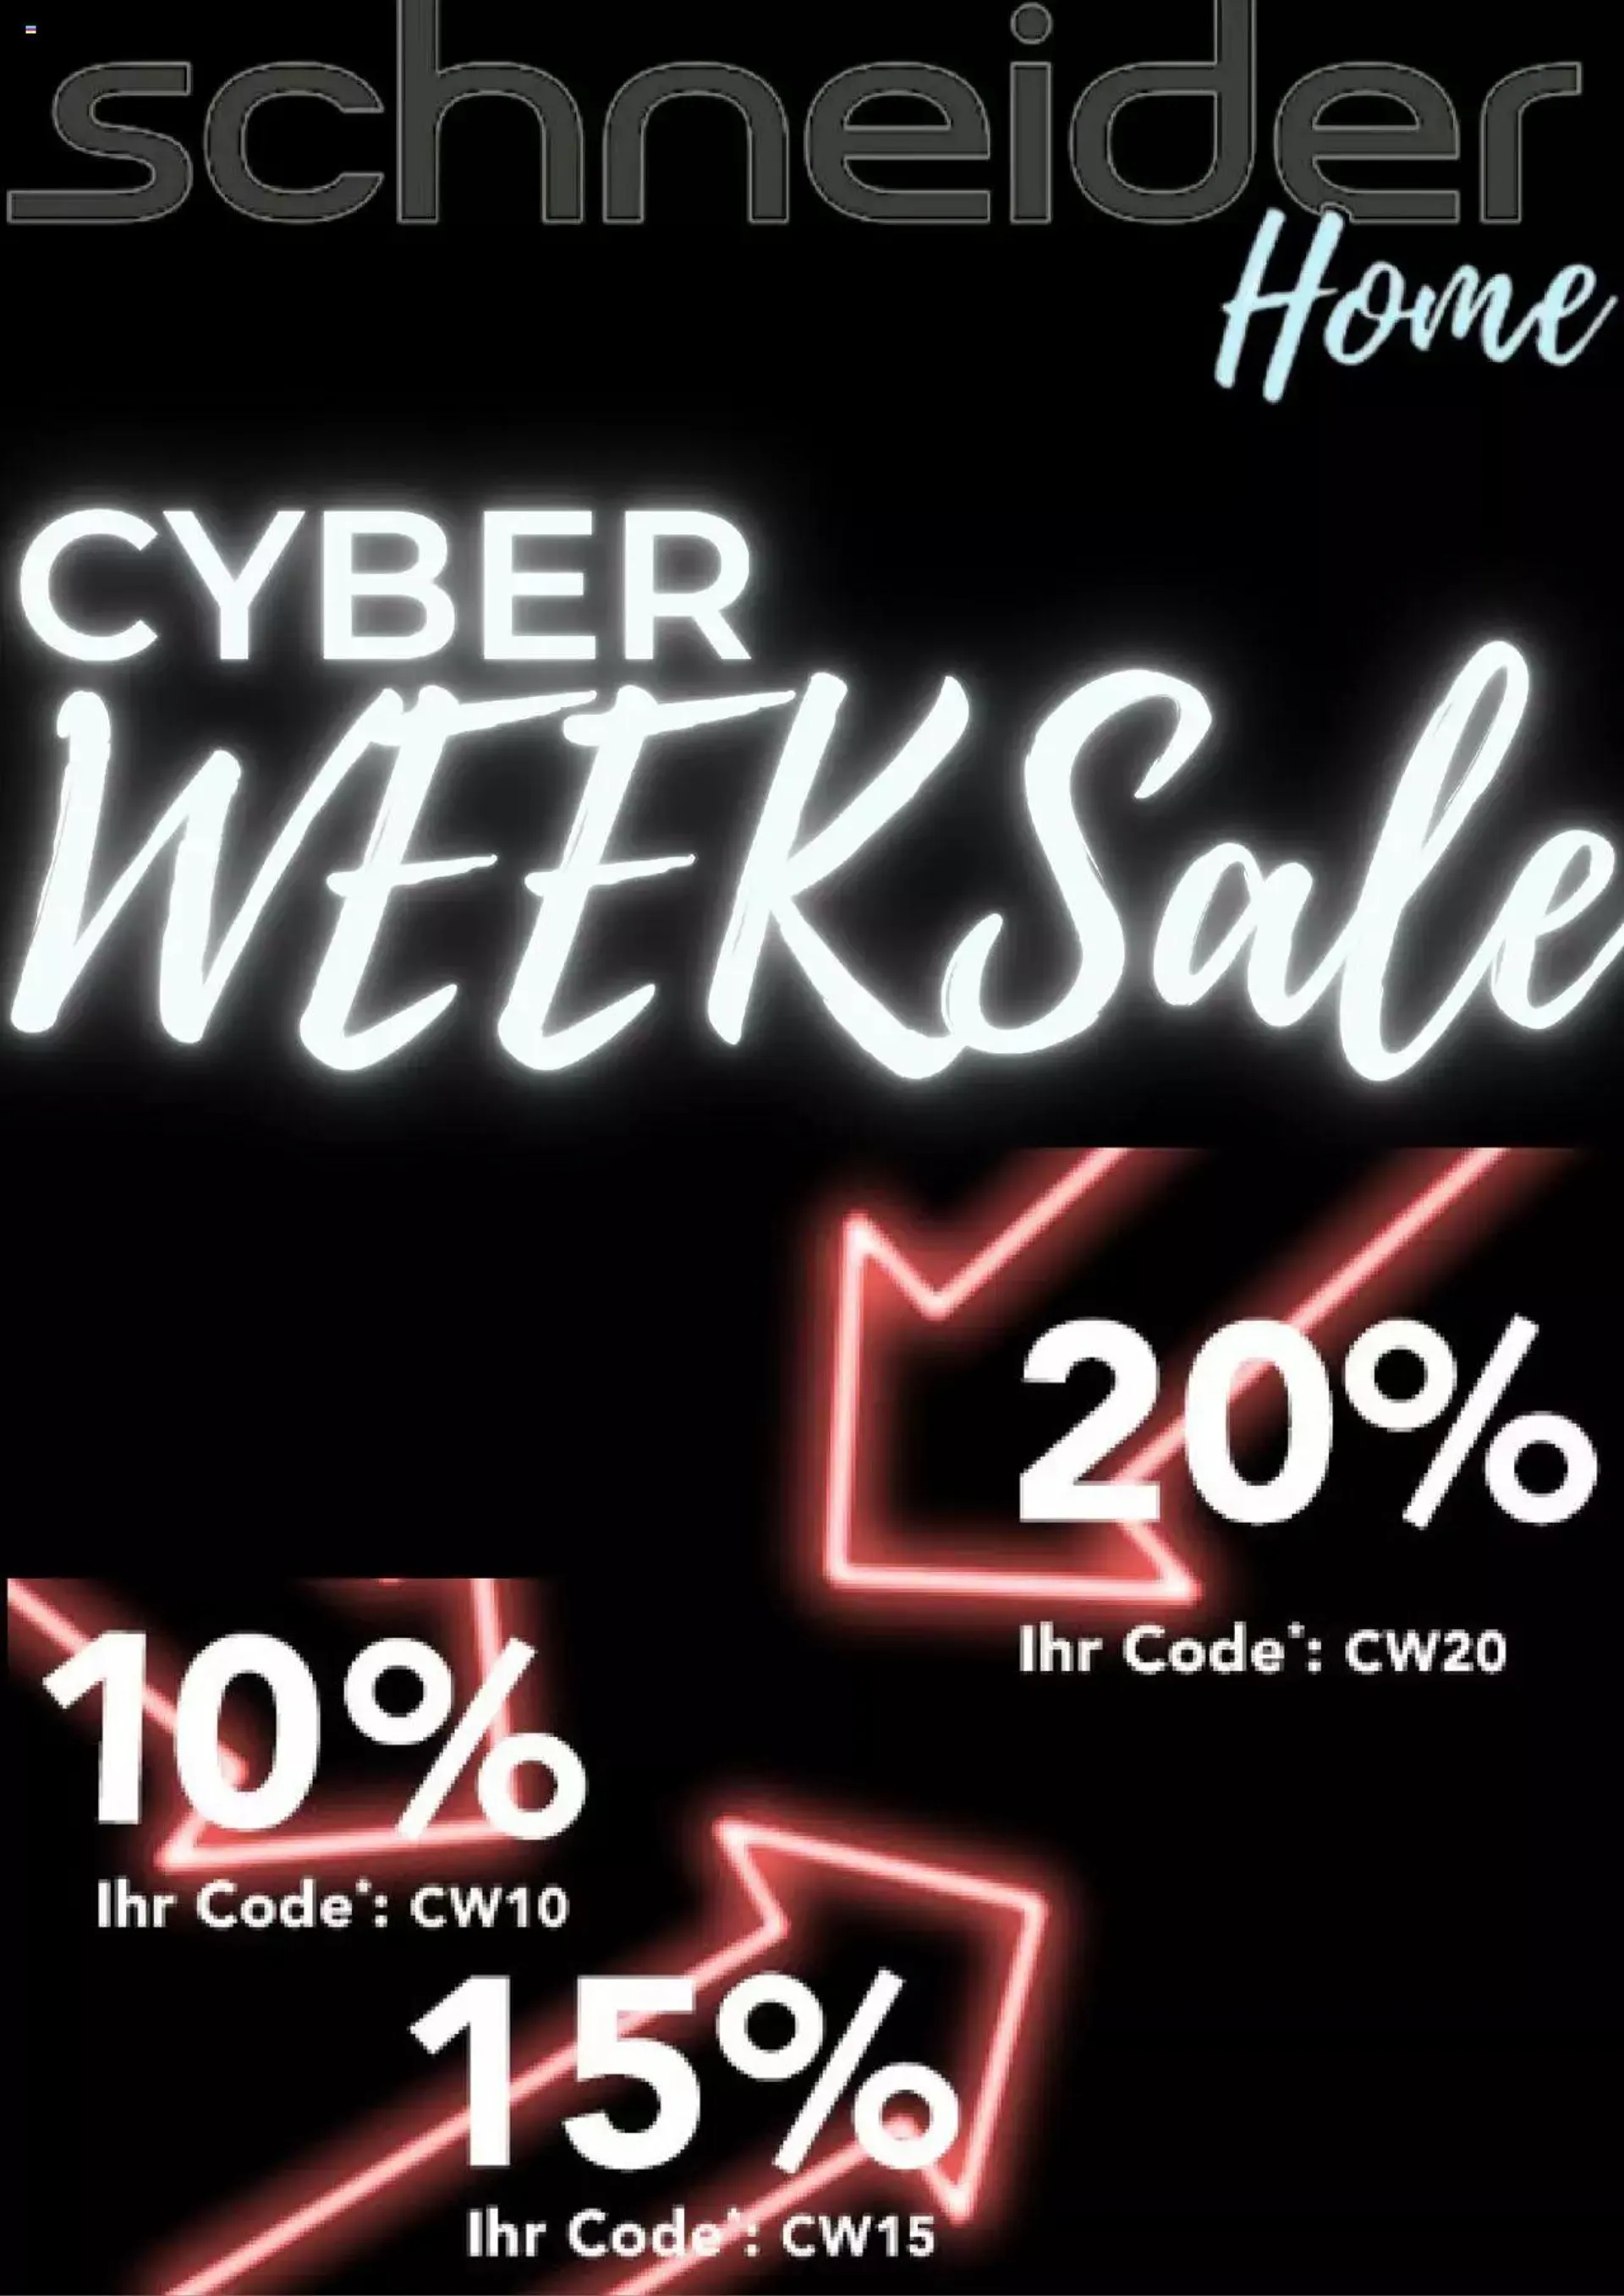 Schneider - Cyber Week Sale